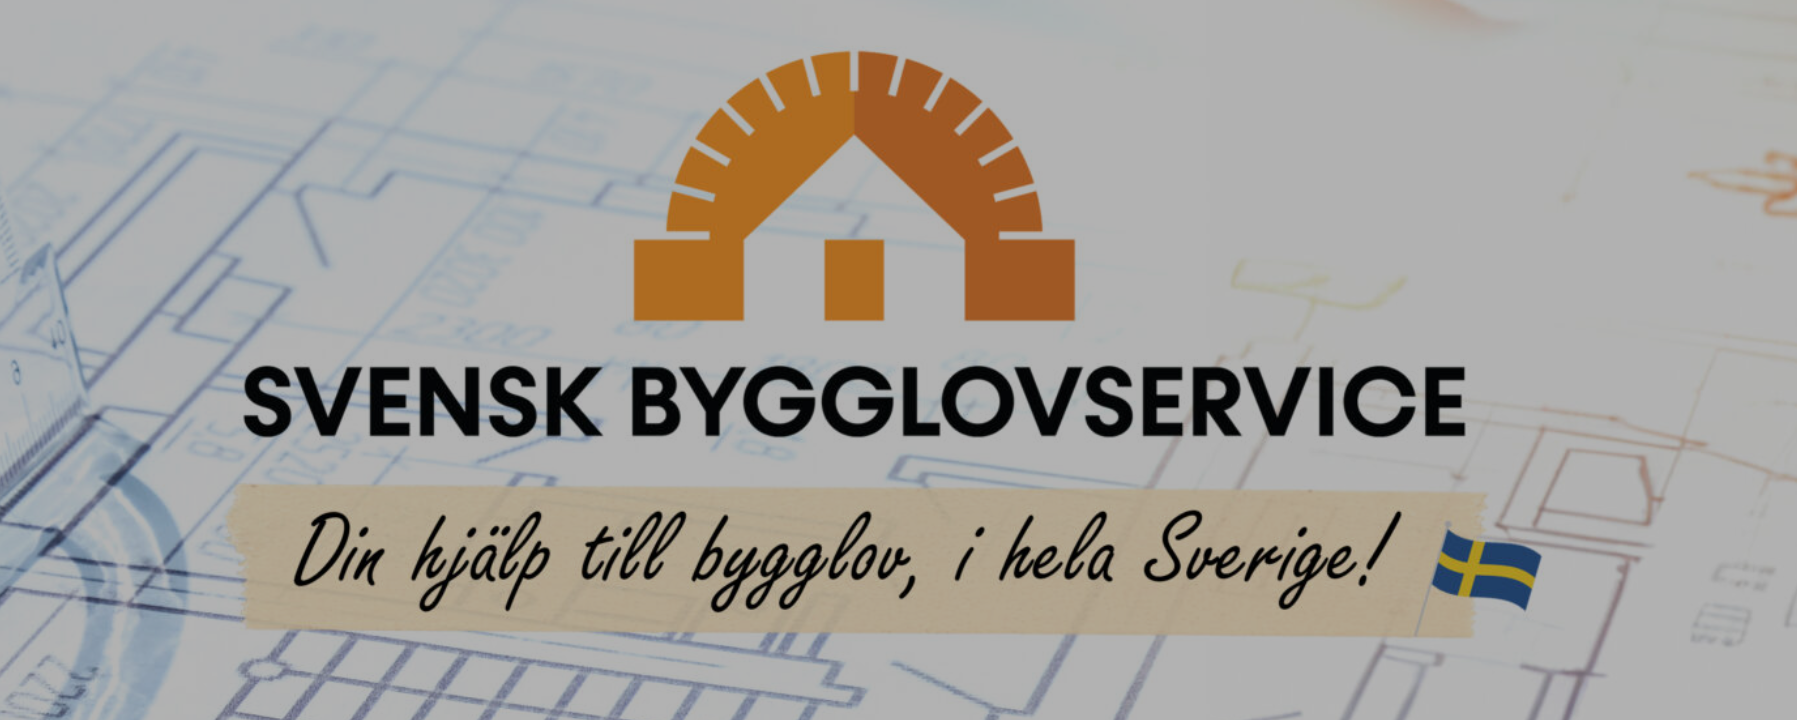 Bild av företag Aktiebolaget Svensk Bygglovservice